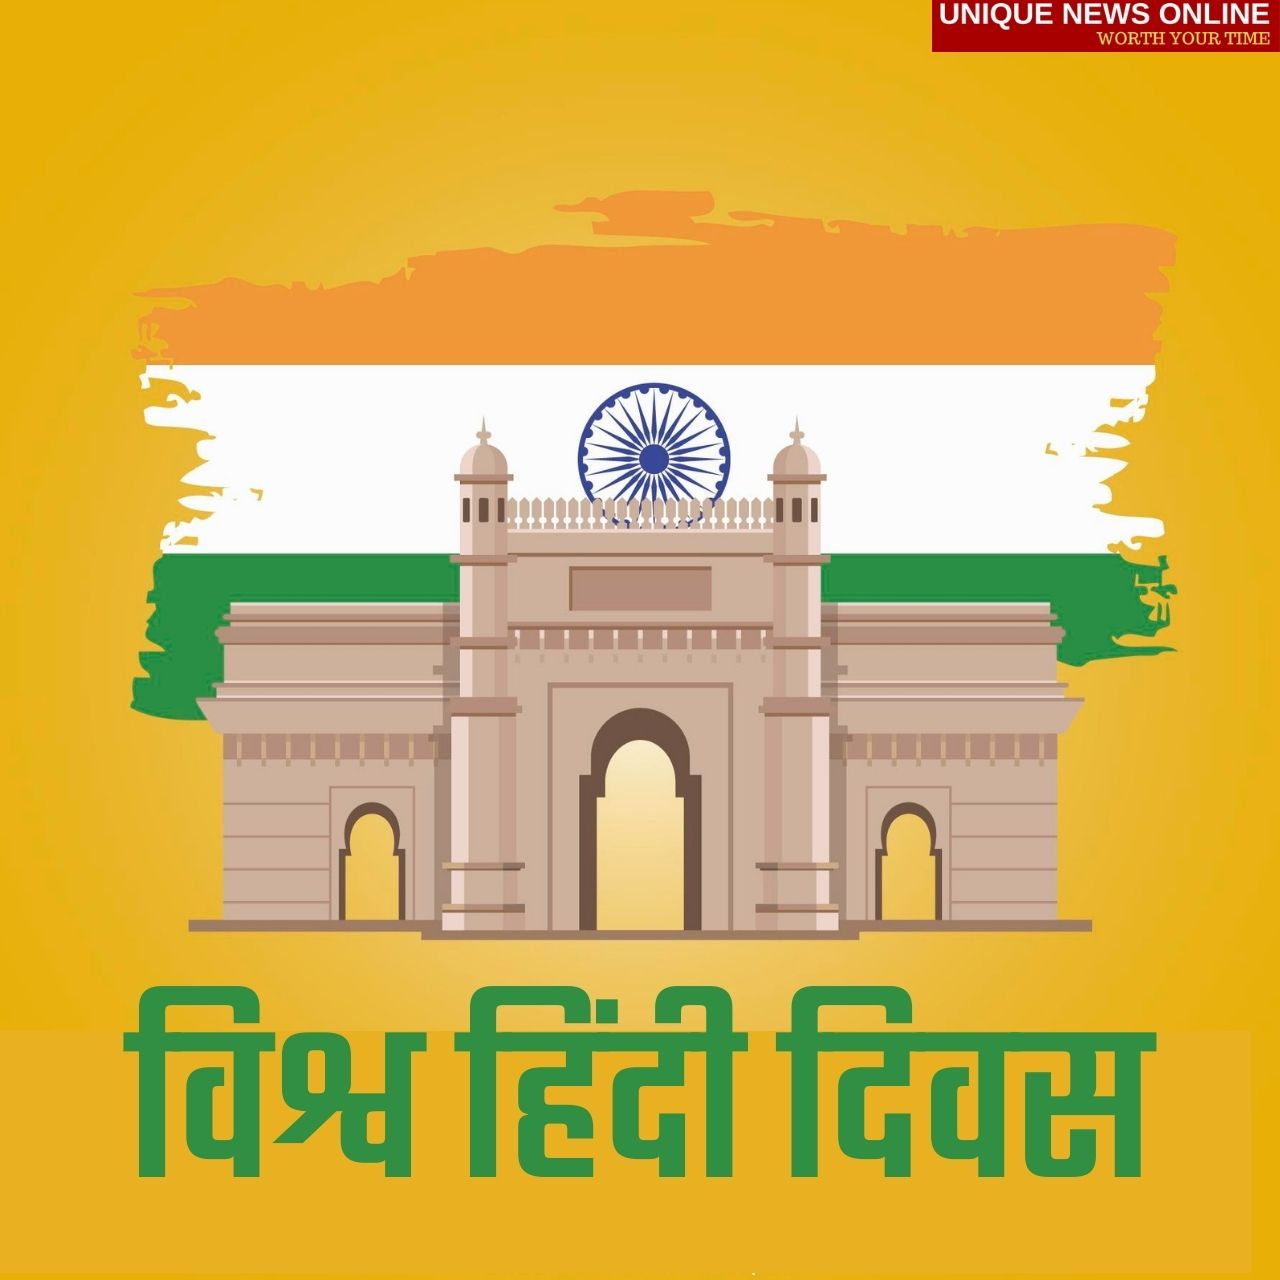 World Hindi Day 2022 Hindi Wishes, Quotes, Status Shayari, Greetings, Messages, HD Images to share